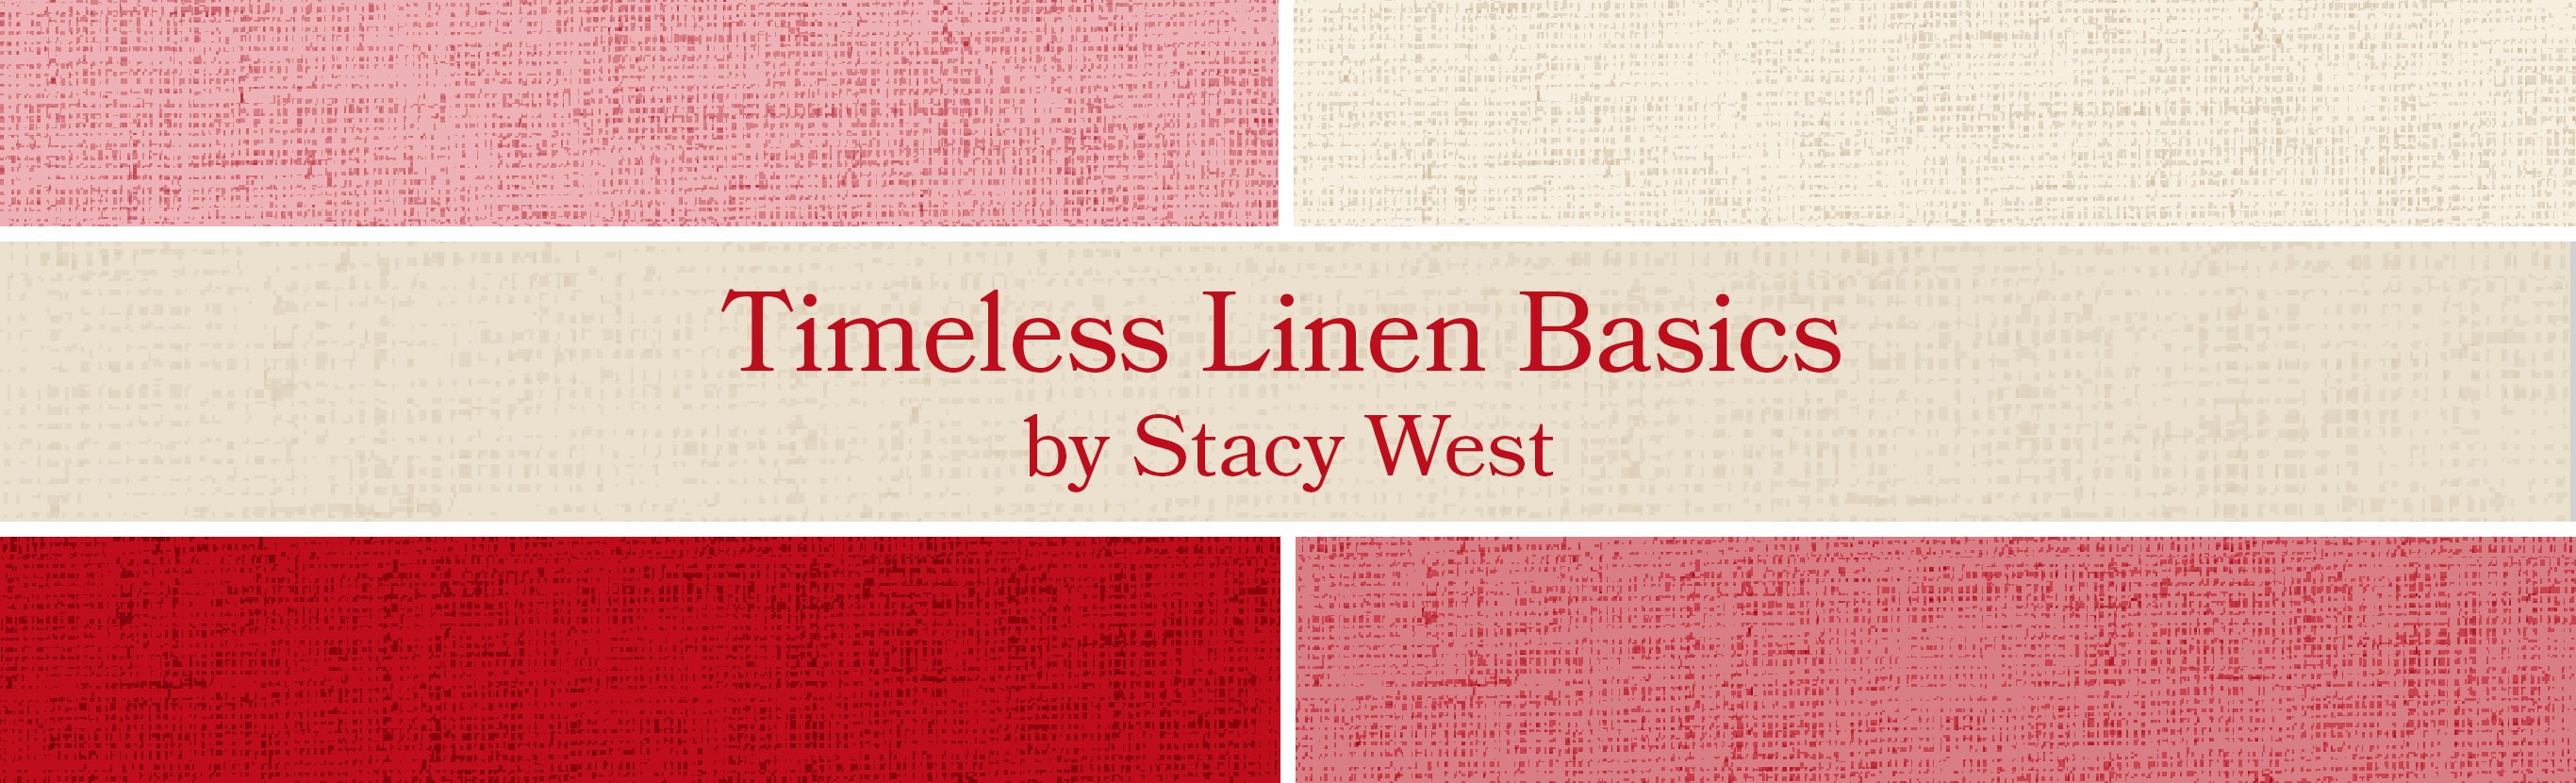 Timeless Linen Basics